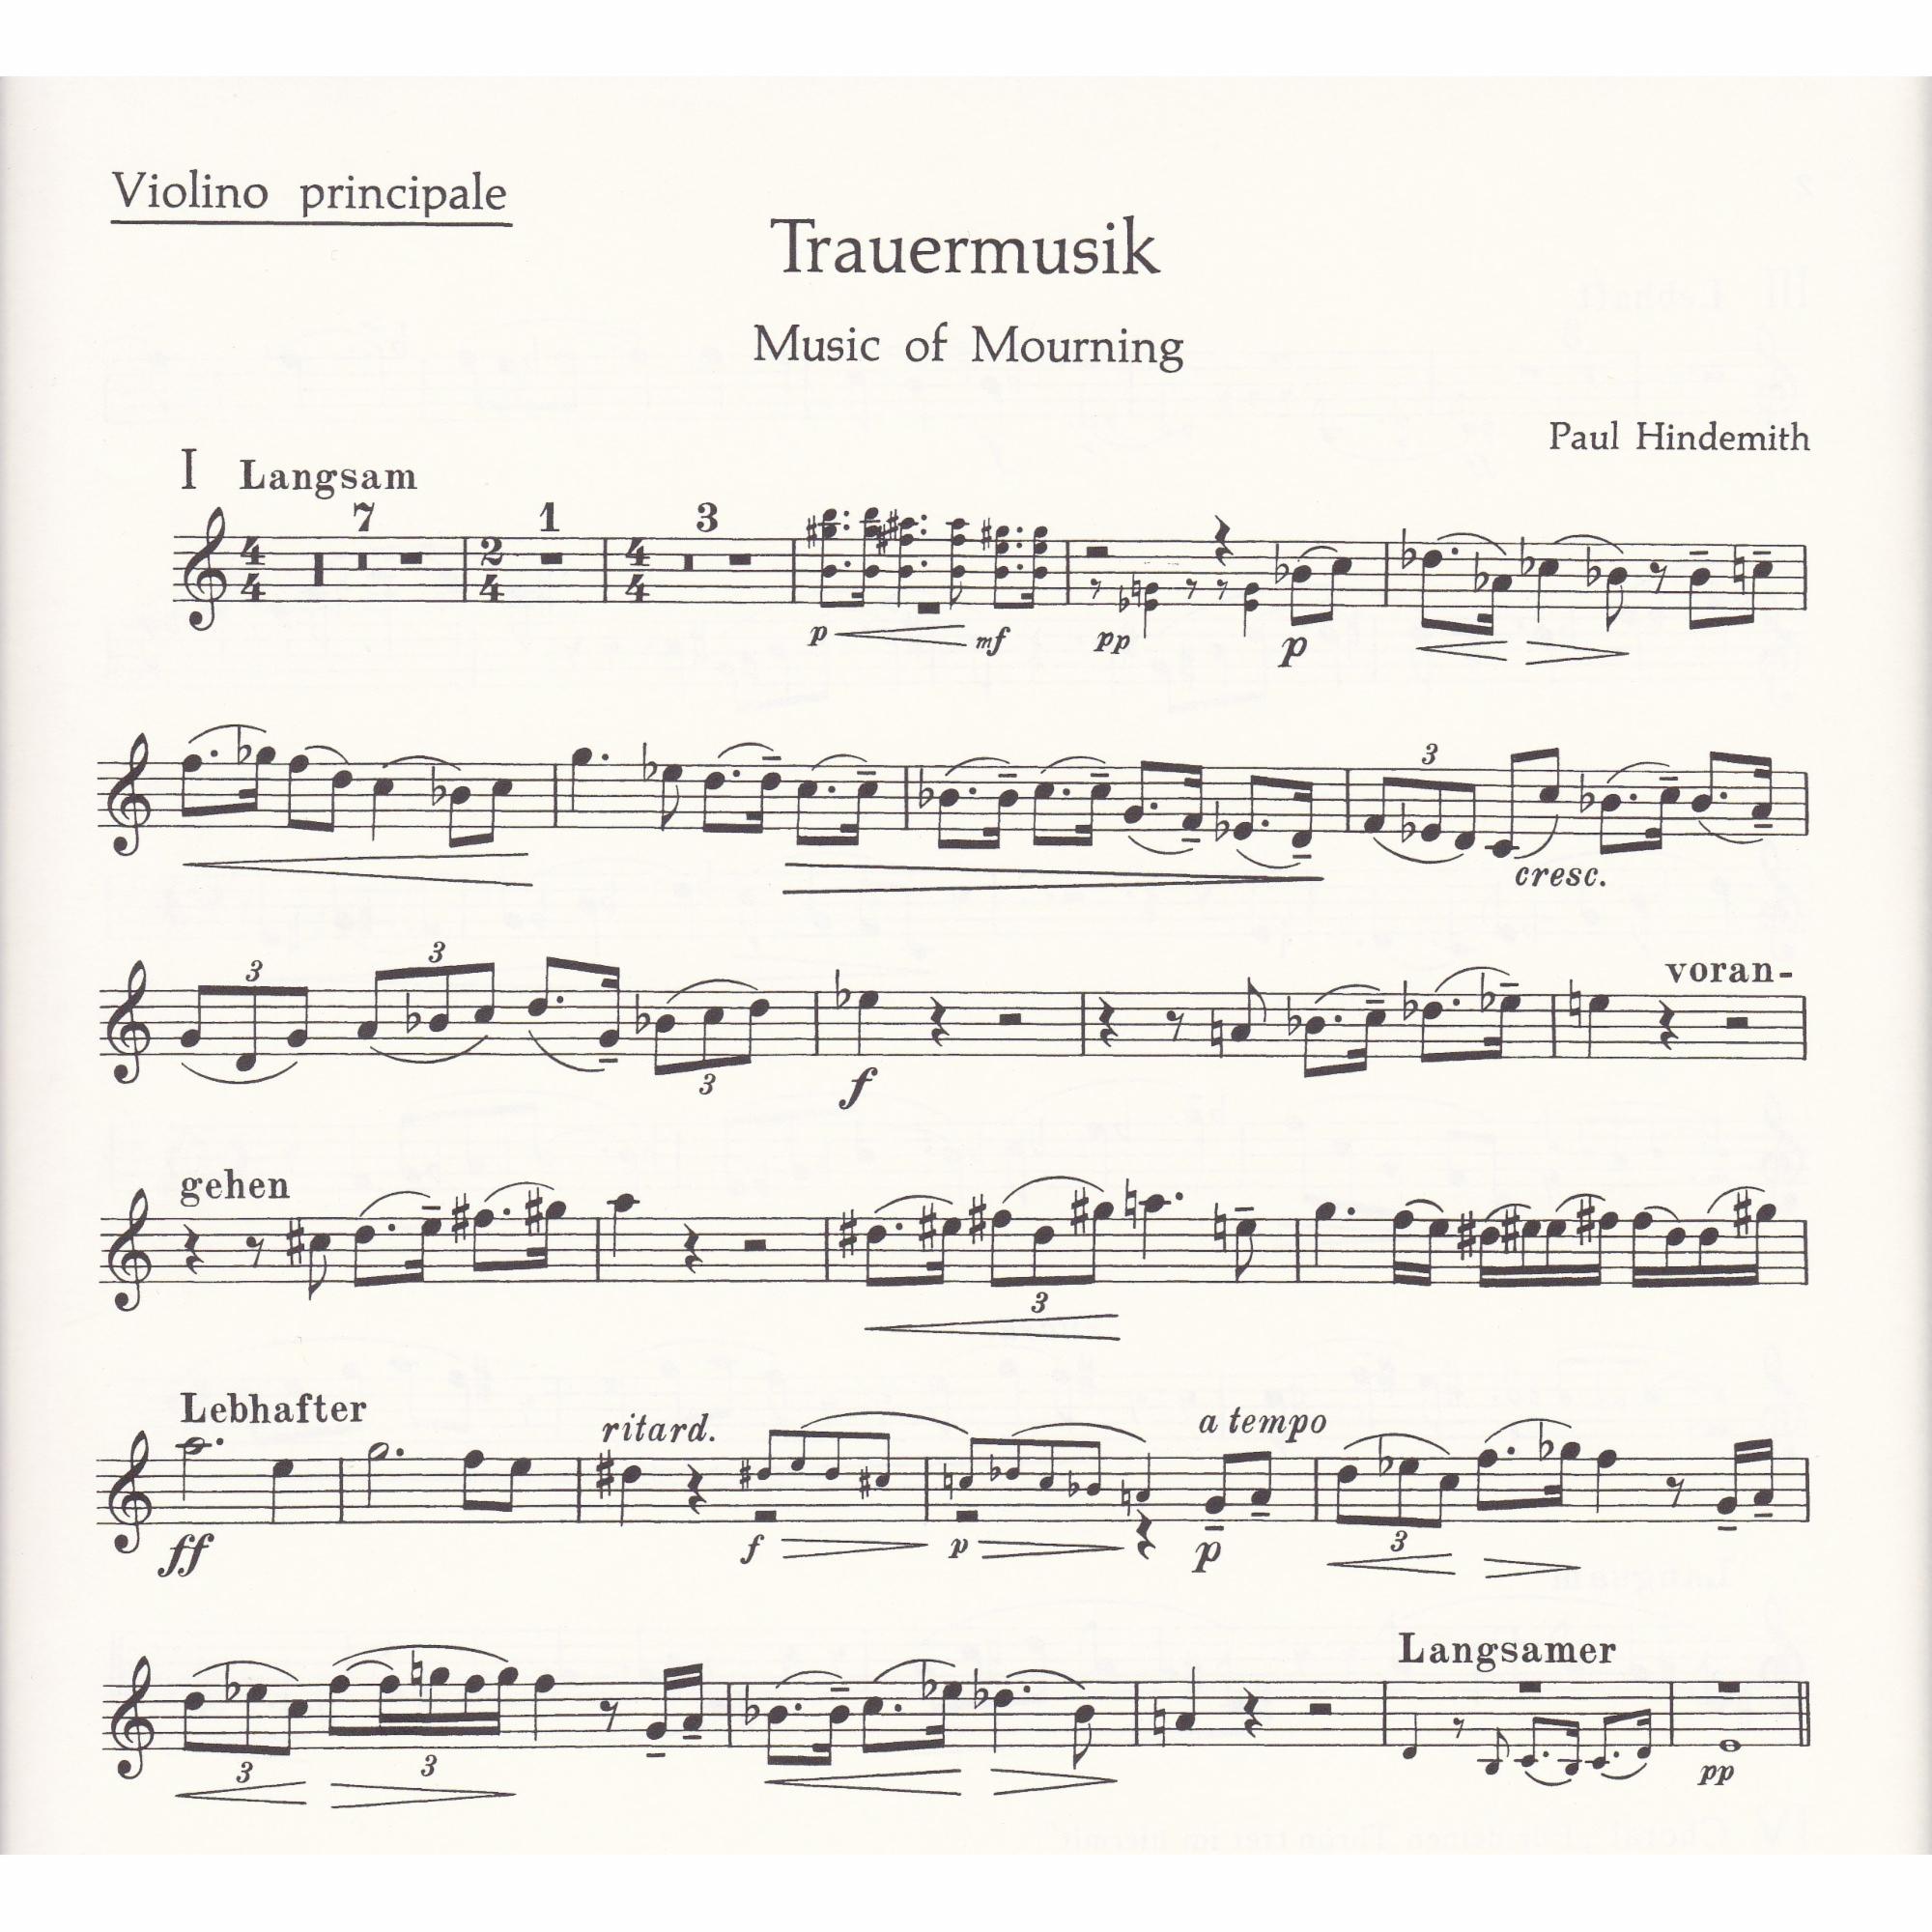 Trauermusik for Viola, Cello, or Violin, and Piano